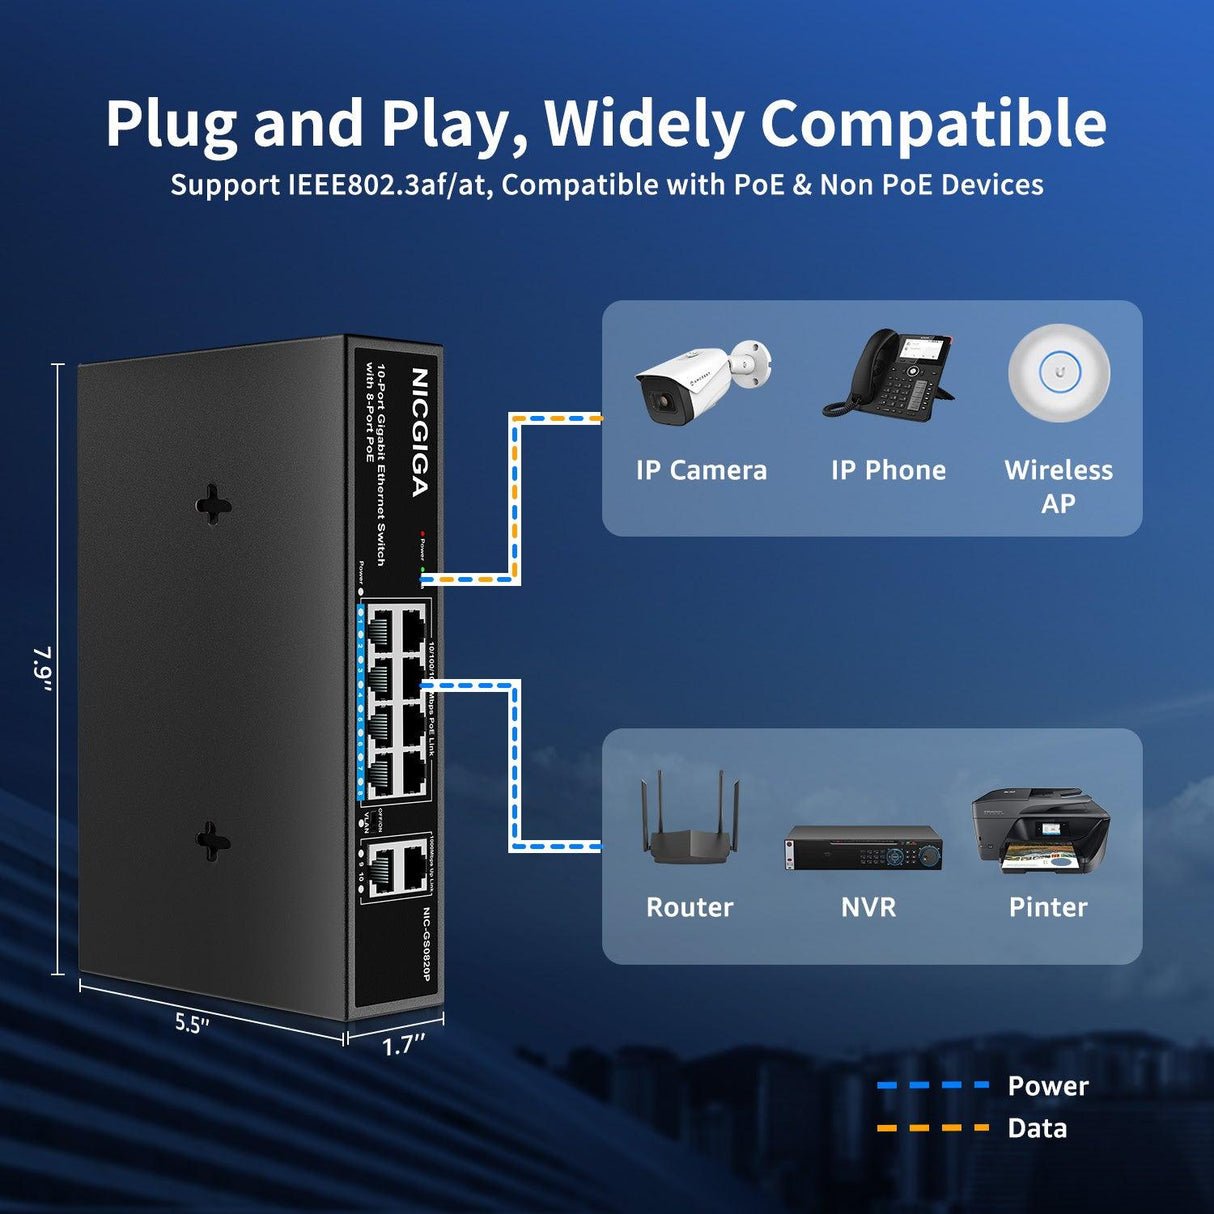 NICGIGA 8 Port Gigabit PoE Switch, 8 Ports PoE+@120W, 2 Uplink Port, 802.3af/at, VLAN Mode, Fanless. Unmanaged Power Over Ethernet Network Switch - NICGIGA